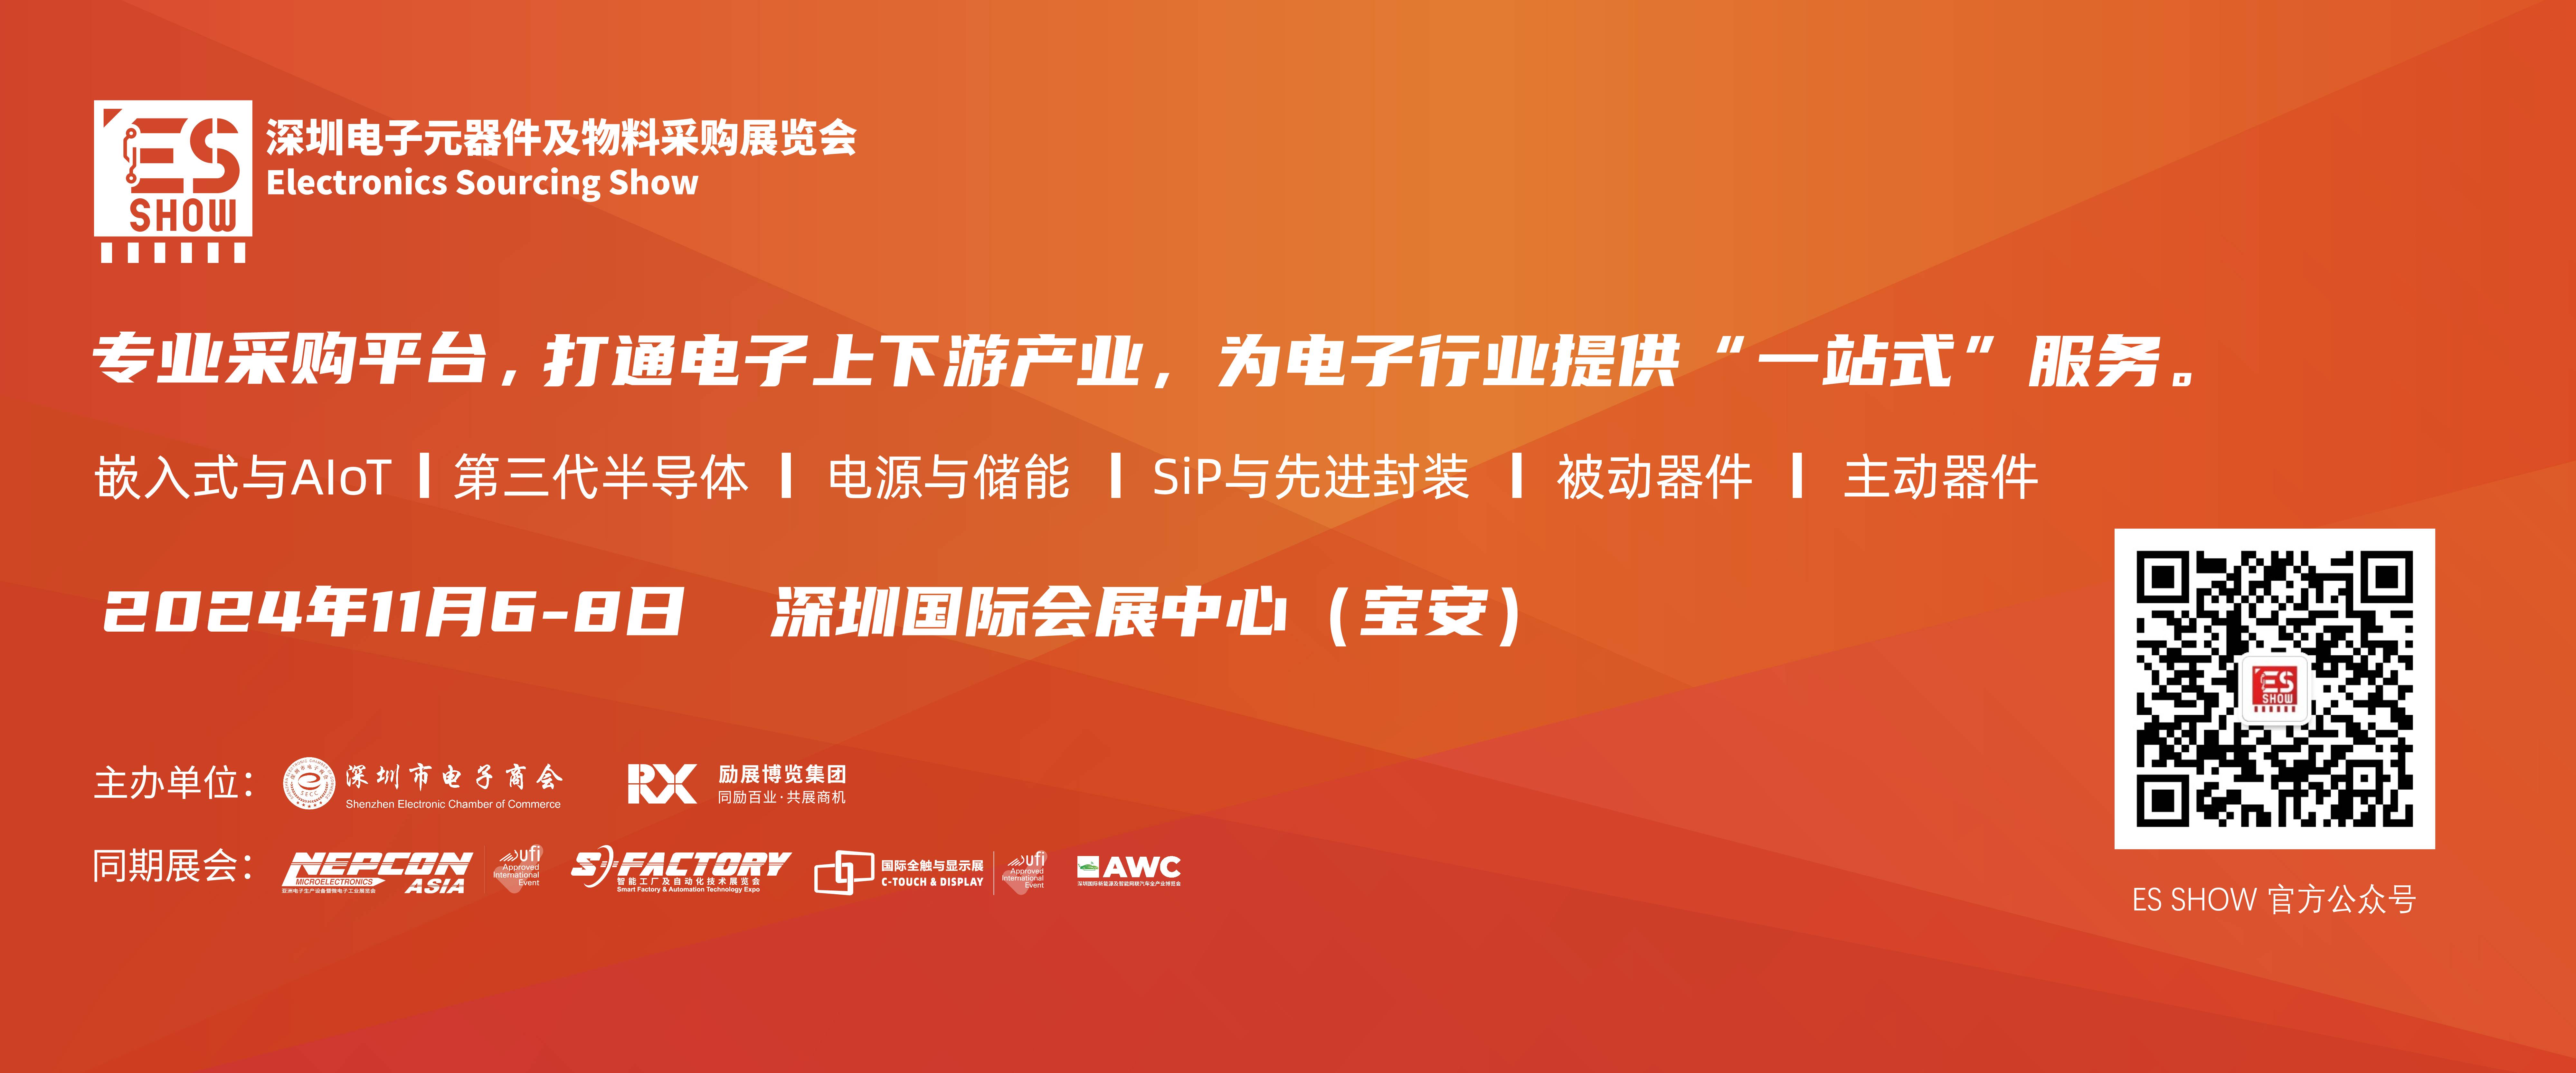 深圳电子展 华南电子展 新能源 小米SU7 问界 电子展